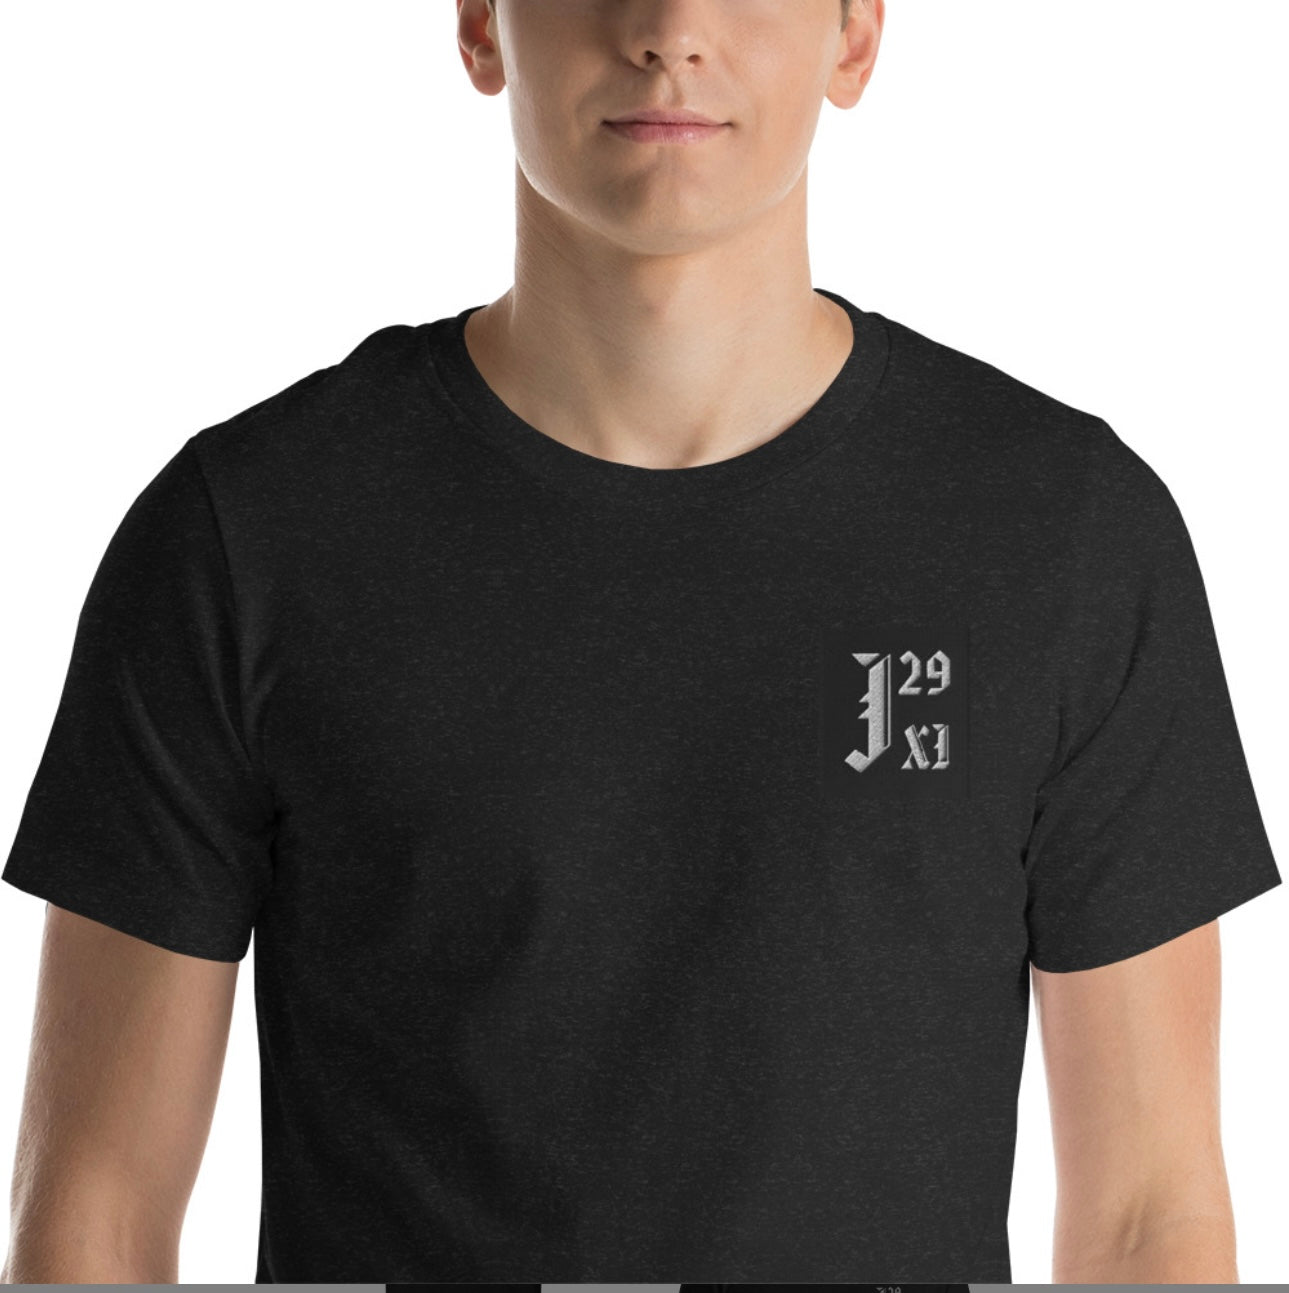 J29:XI Logo Shirt “Big J”